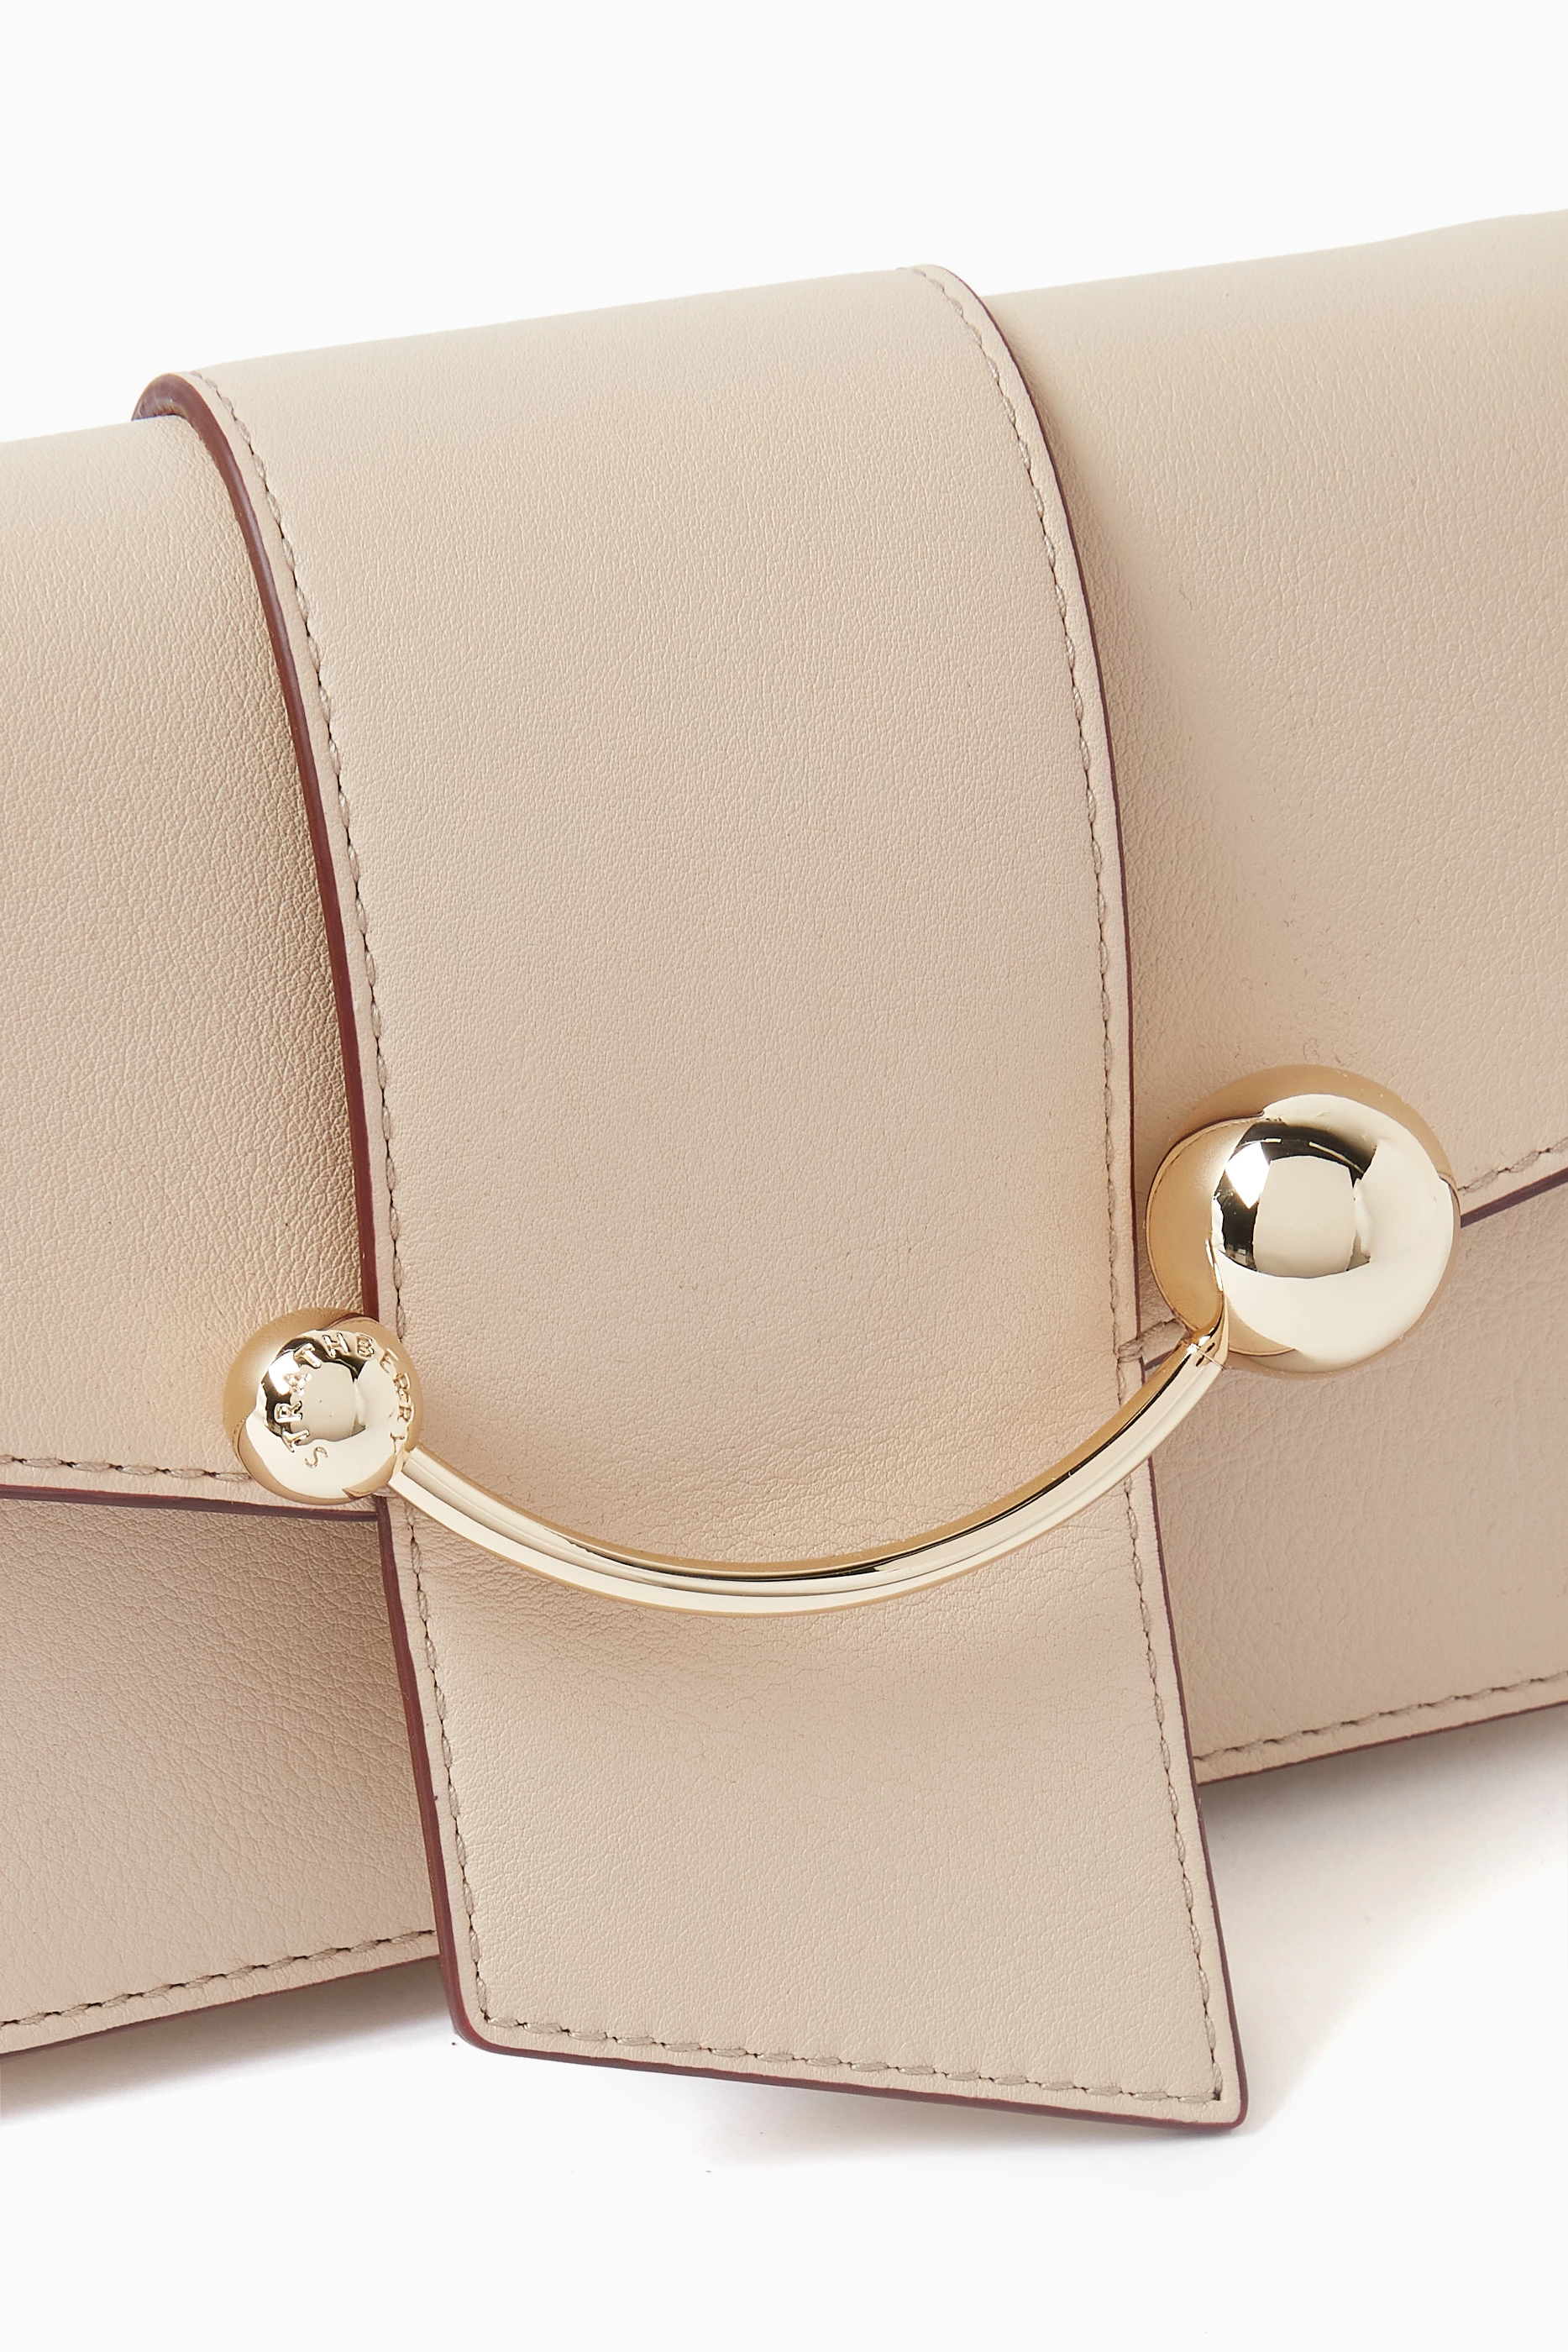 Strathberry Leather Chain-Link Shoulder Bag - Neutrals Shoulder